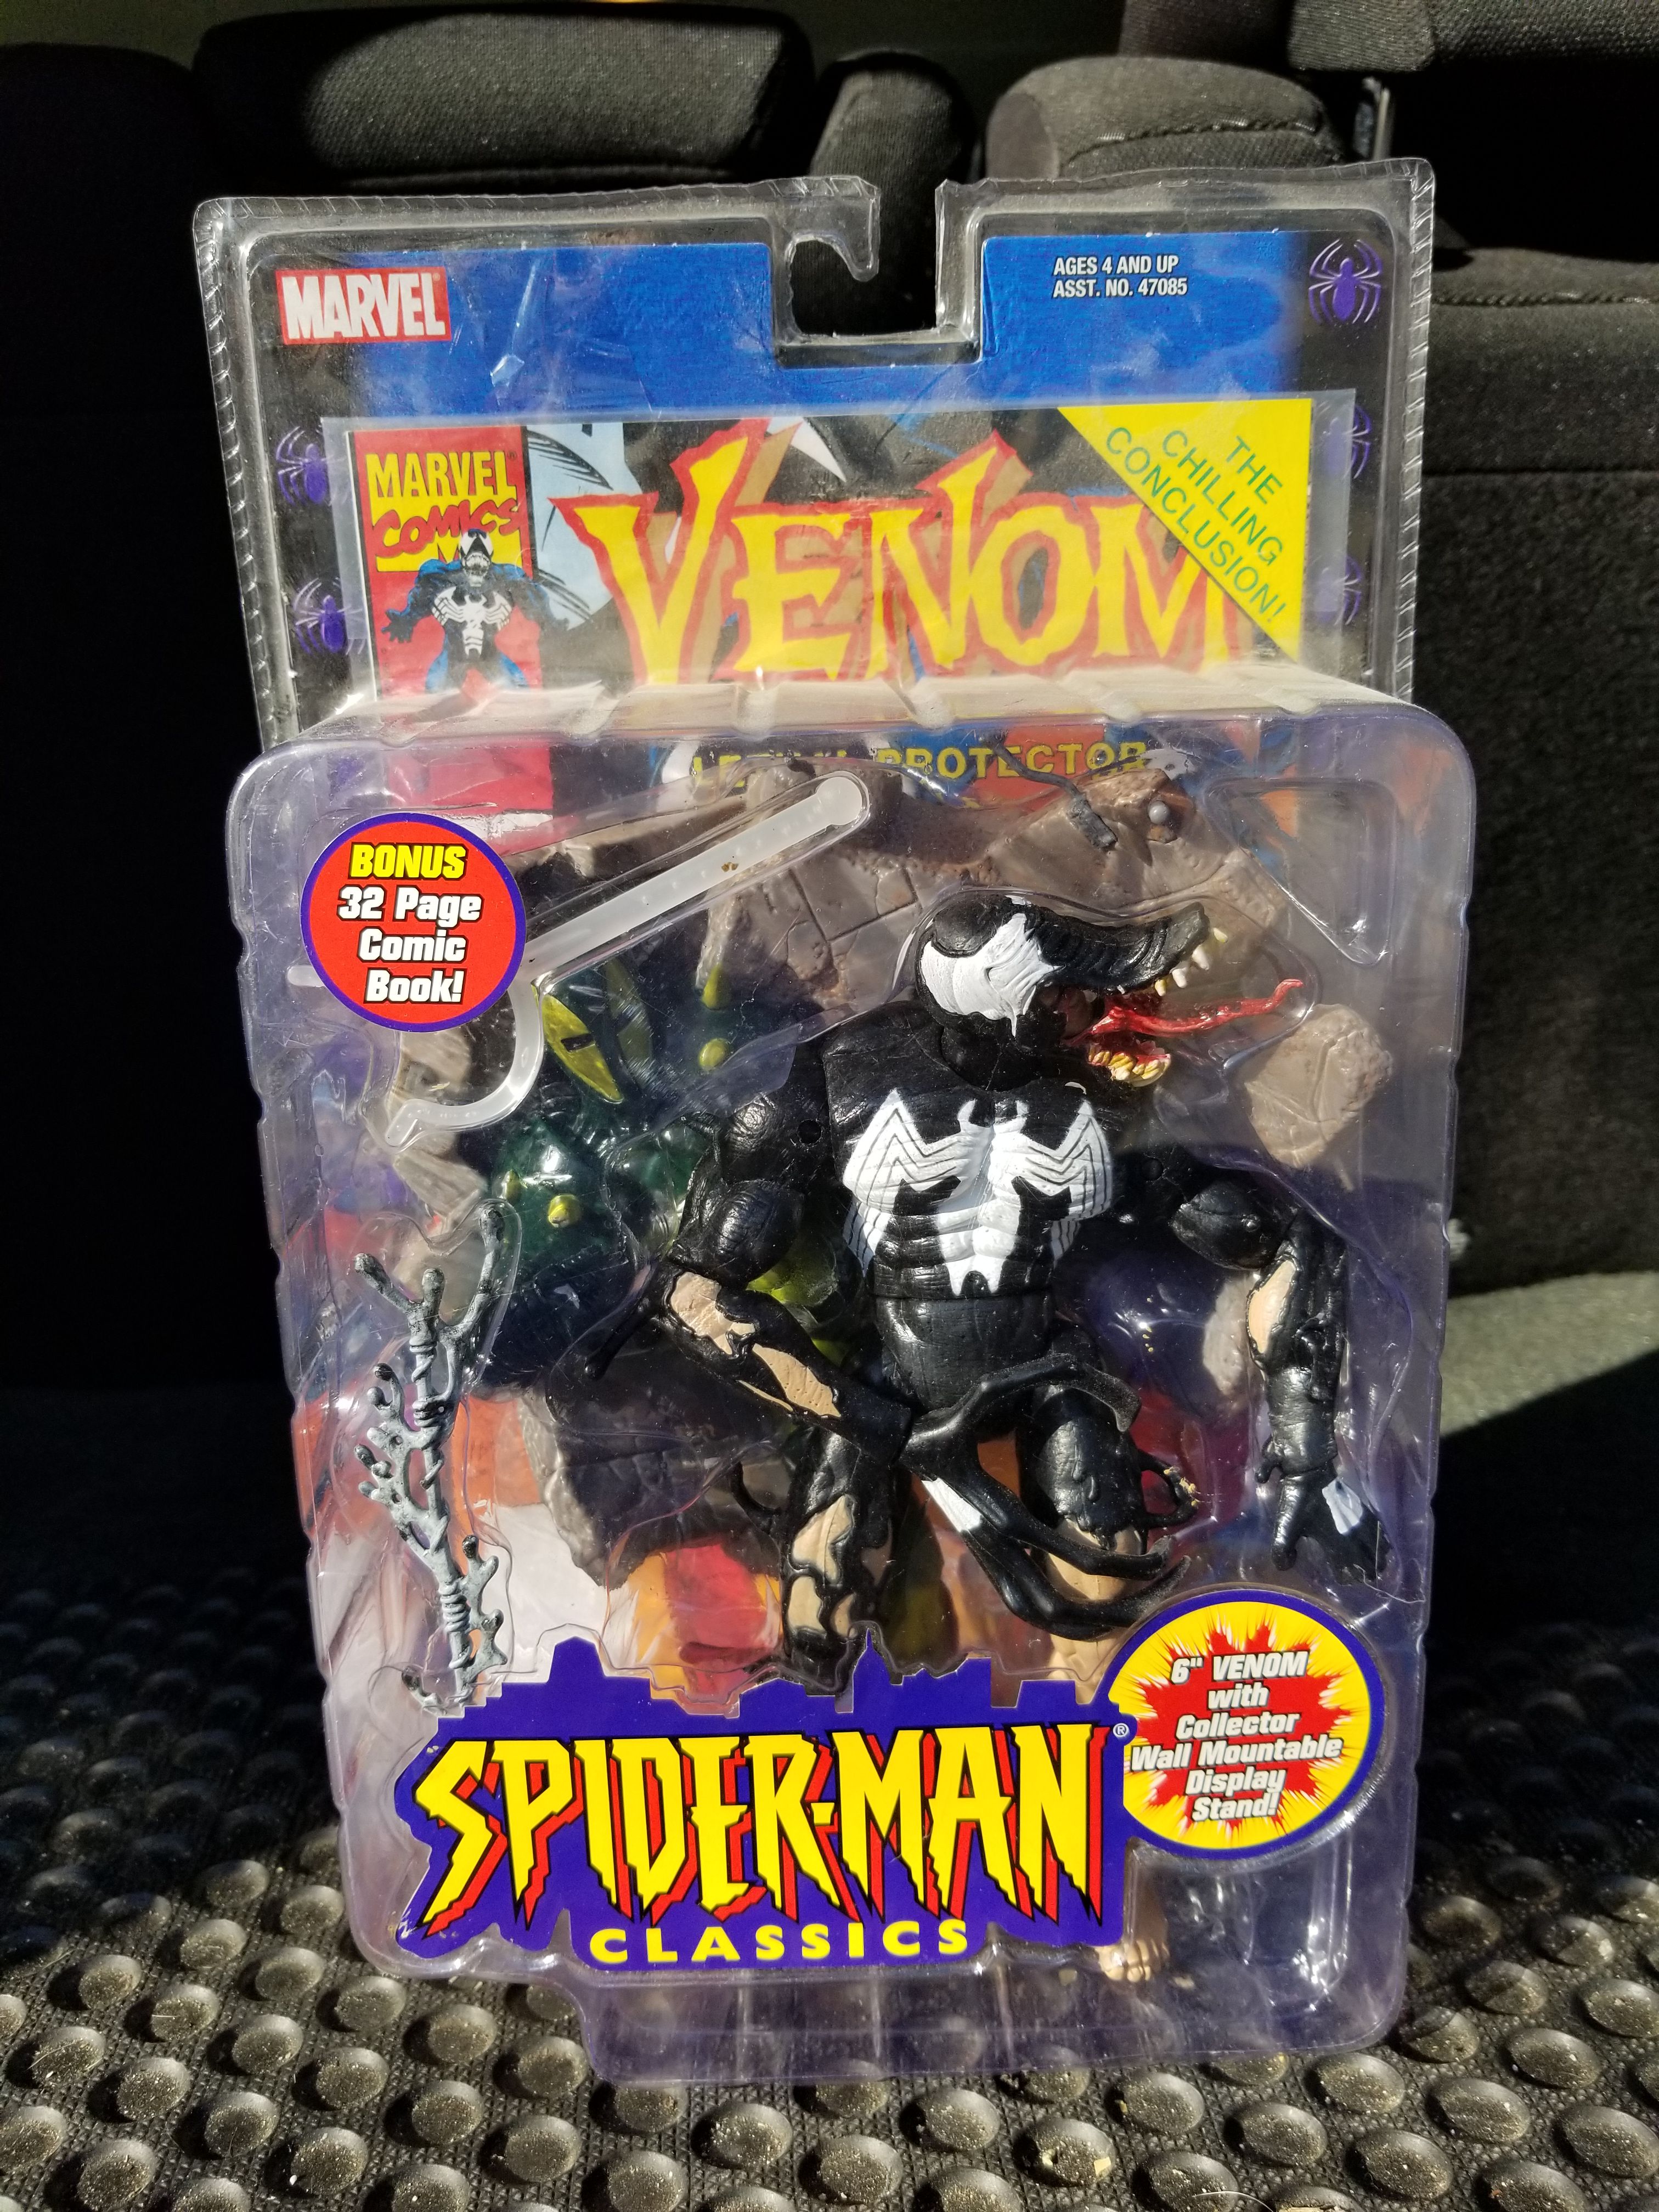 Spiderman classics Venom